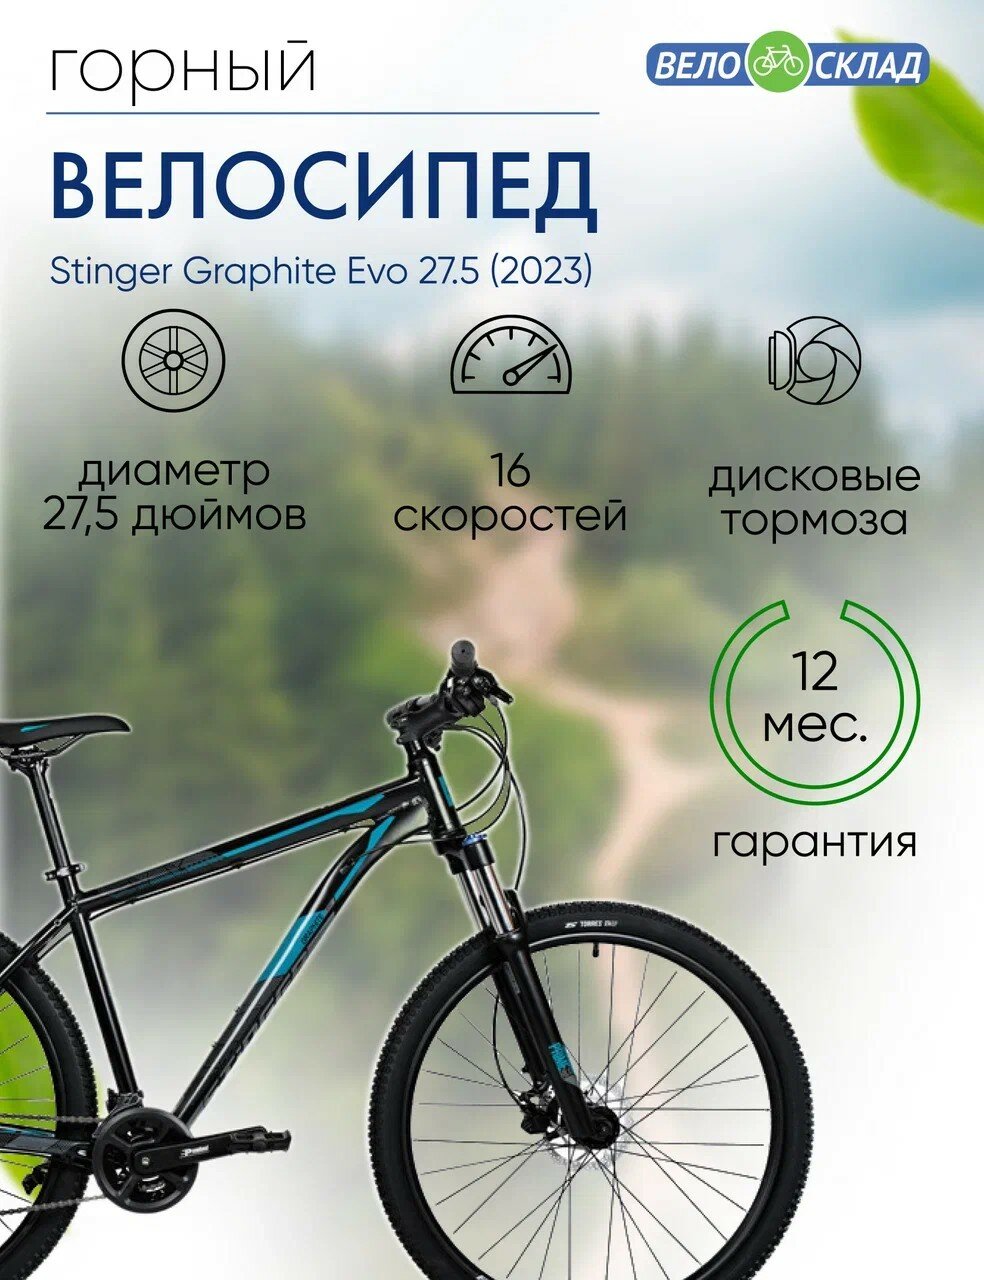 Горный велосипед Stinger Graphite Evo 27.5, год 2023, цвет Черный, ростовка 16